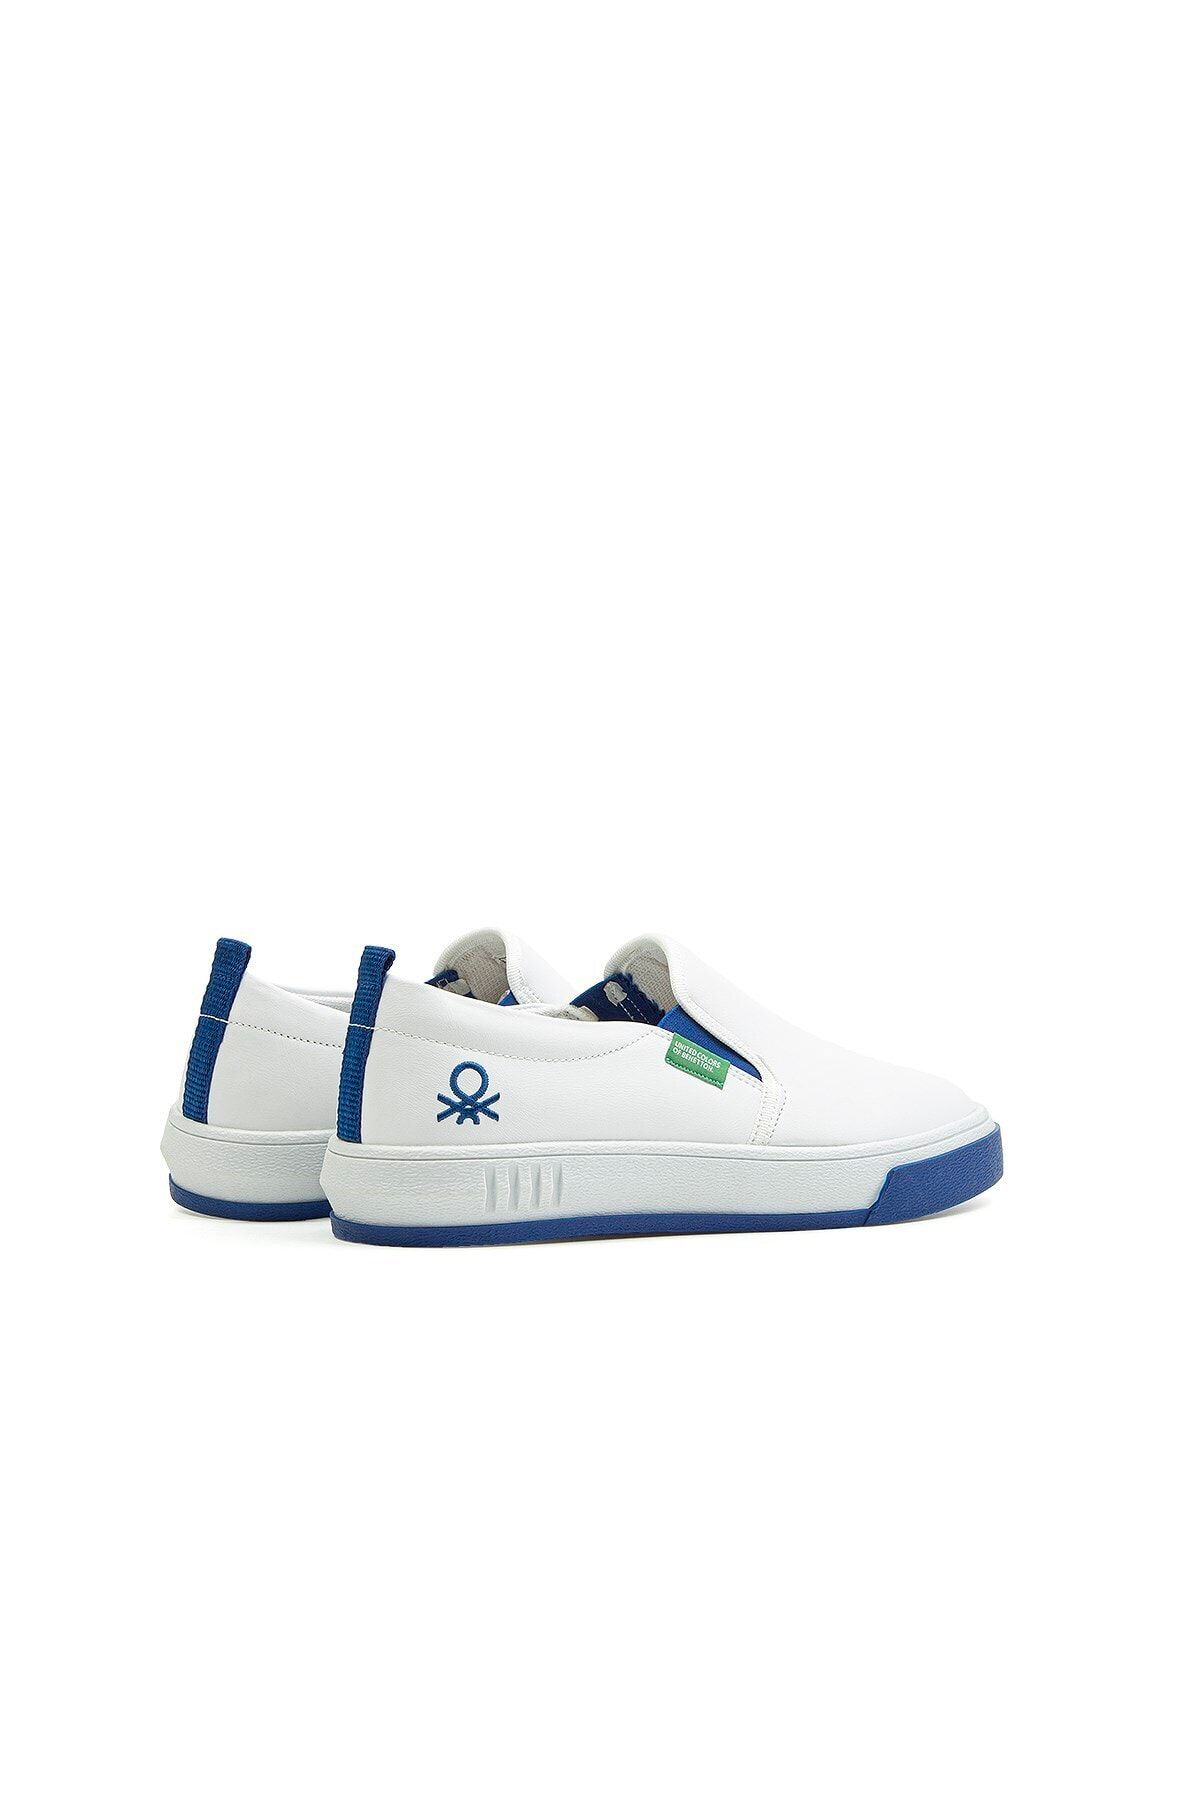 Benetton Bn-30262 Beyaz-mavi Erkek Spor Ayakkabı